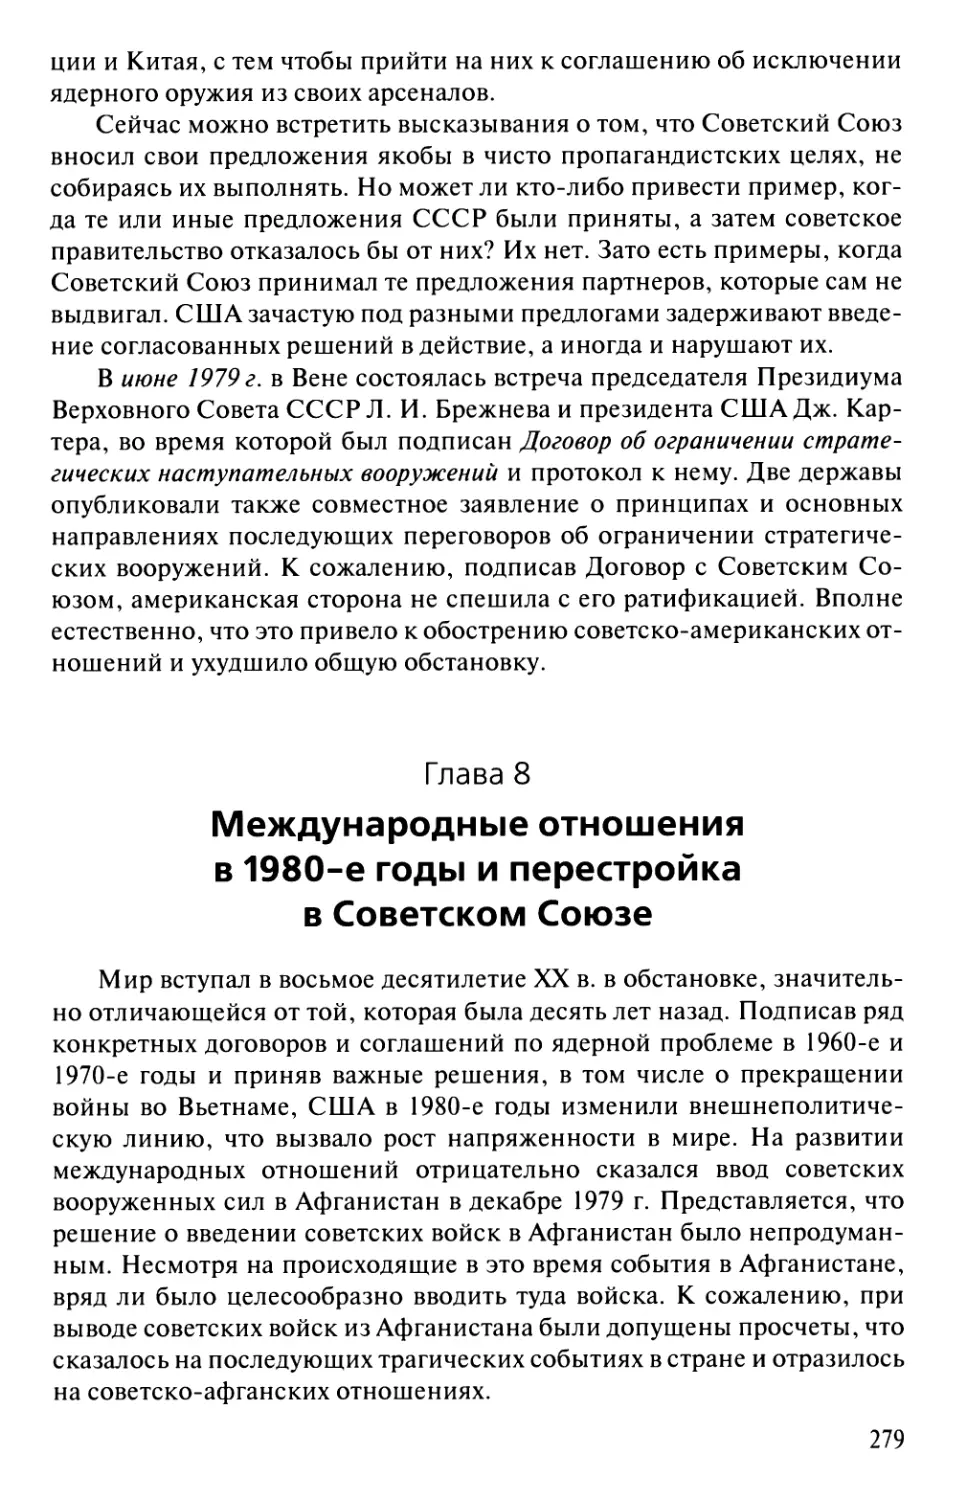 Глава 8. Международные отношения в 1980-е годы и перестройка в Советском Союзе